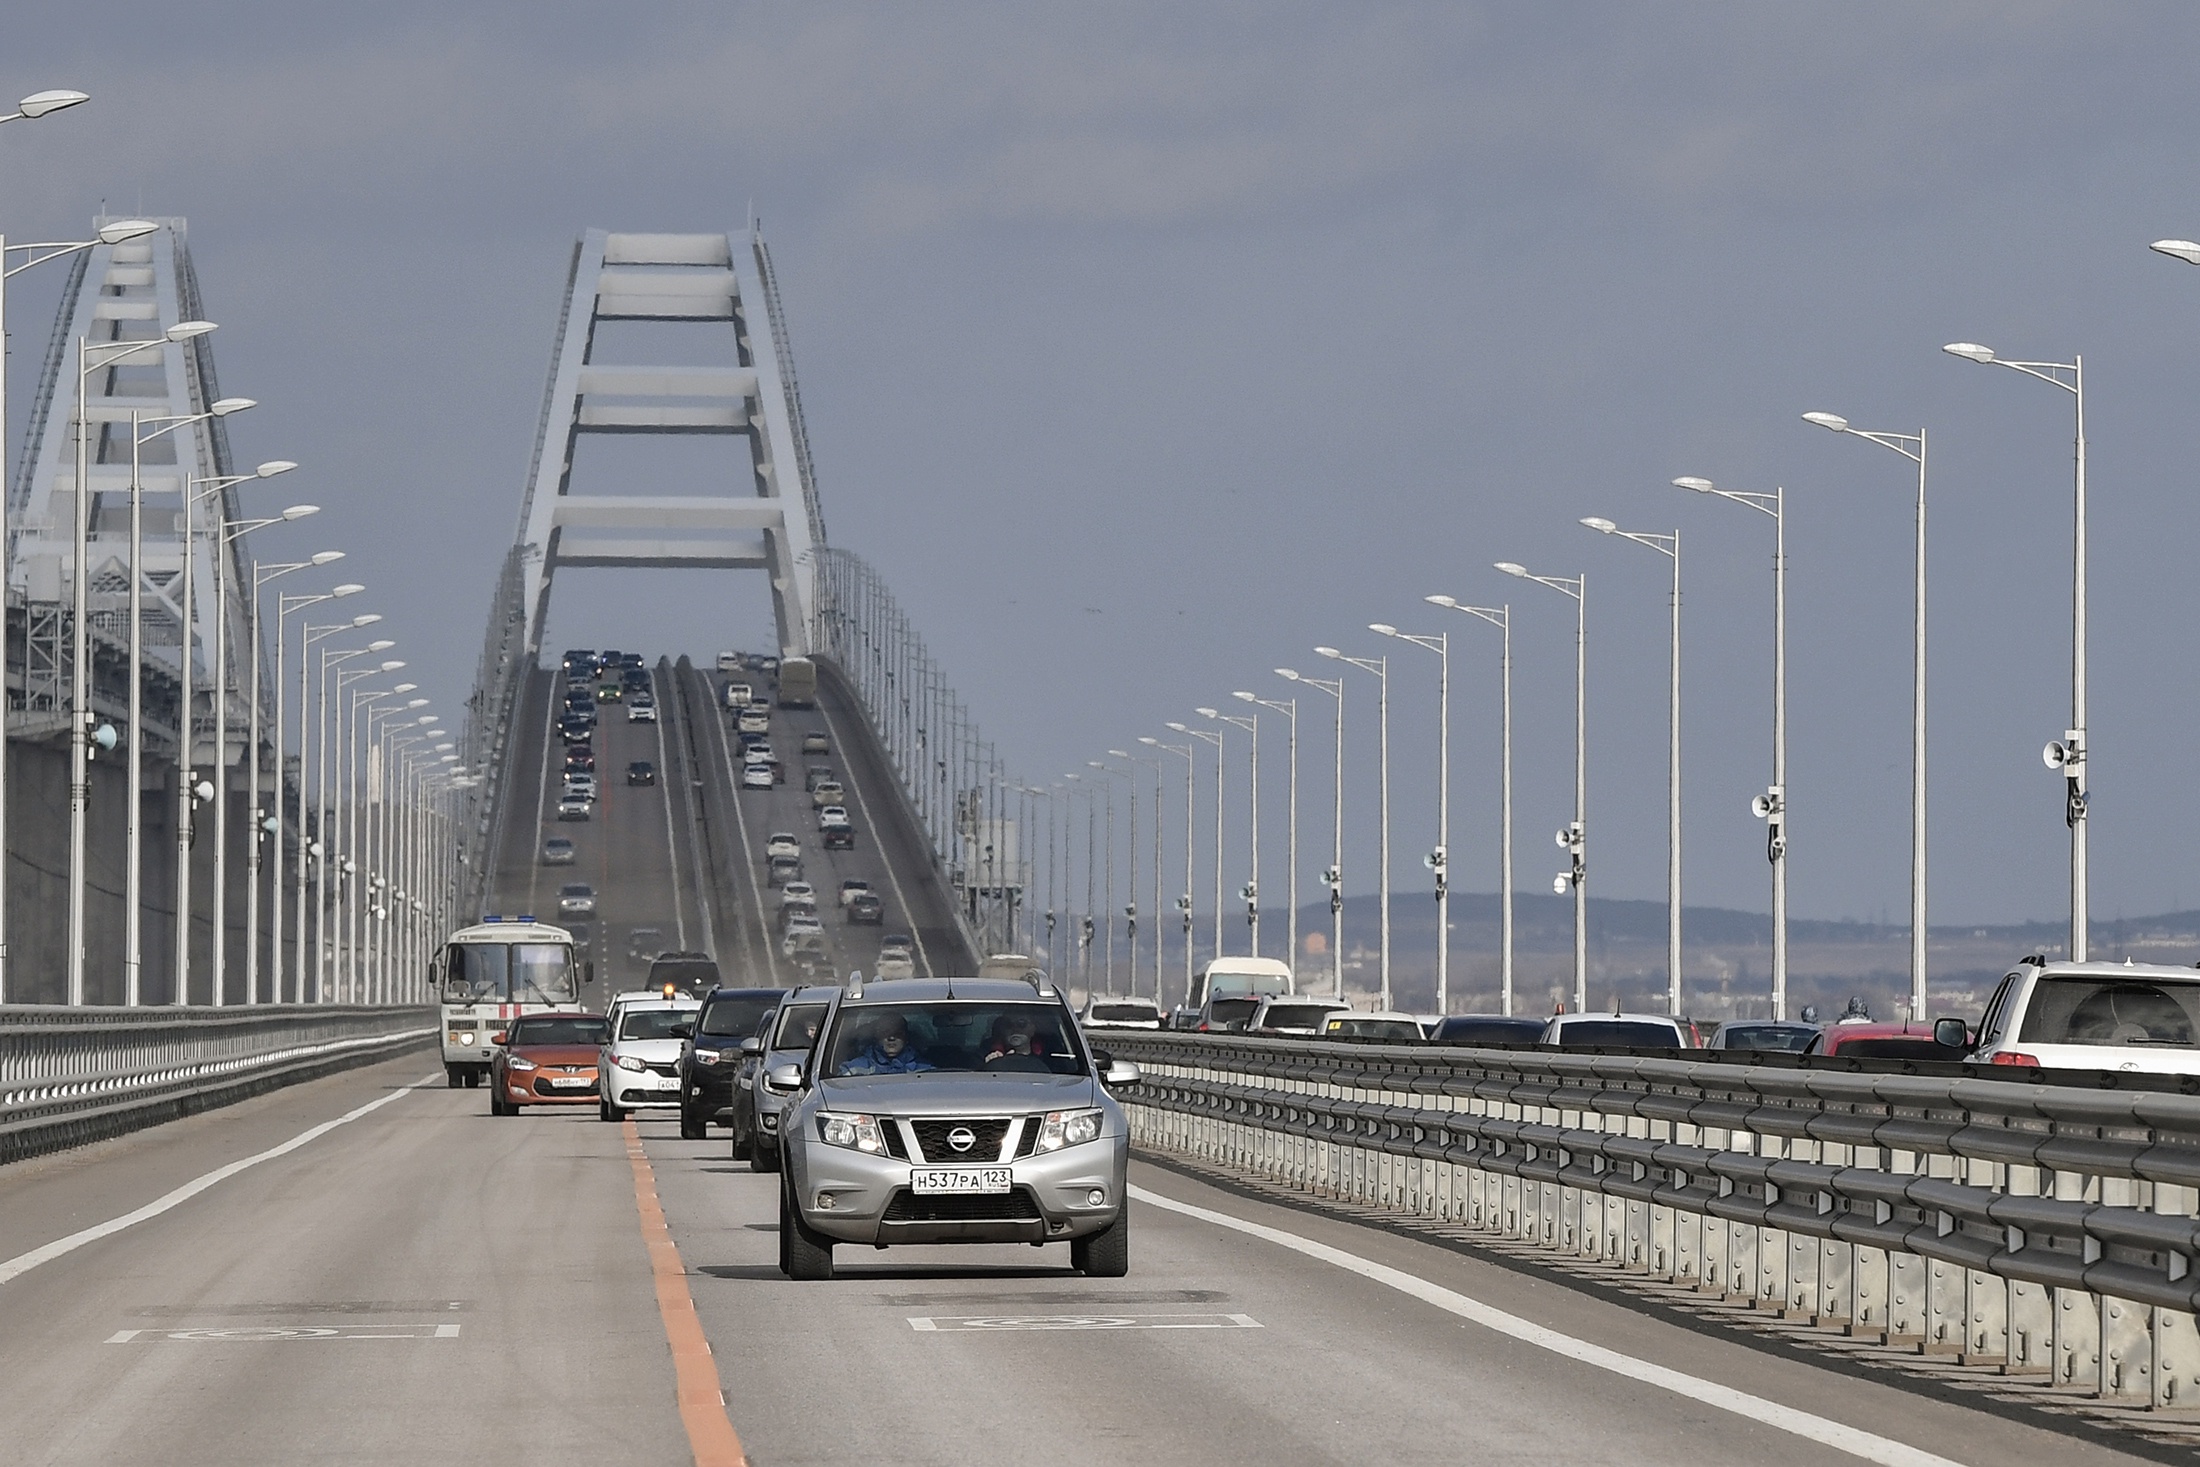 Временный крымский мост